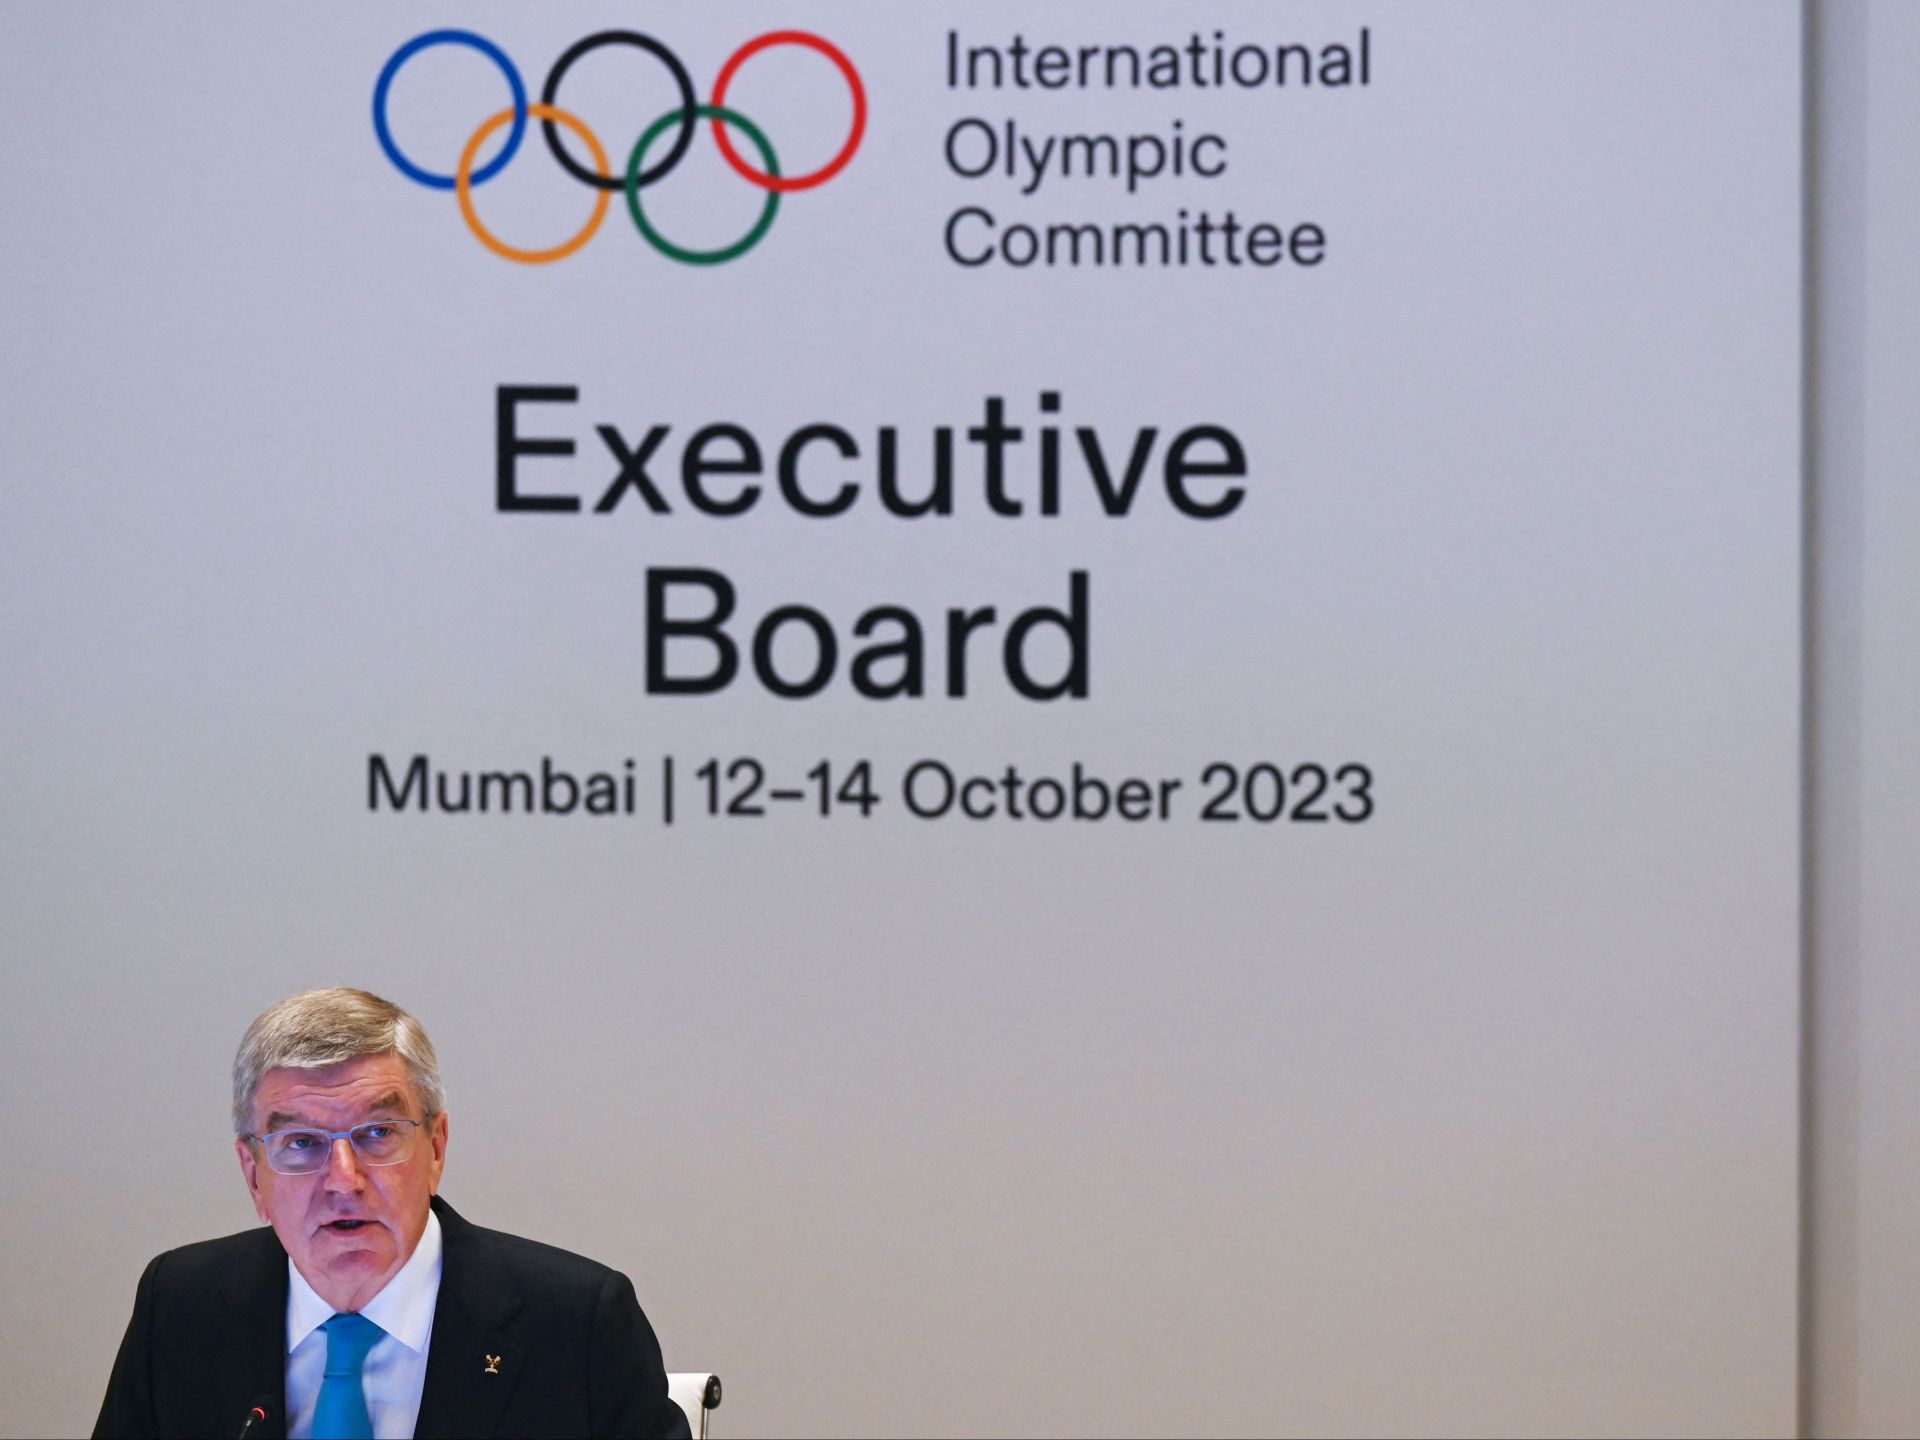 هل تحولت الأولمبية الدولية إلى أداة سياسية بسبب إسرائيل؟ | رياضة – البوكس نيوز